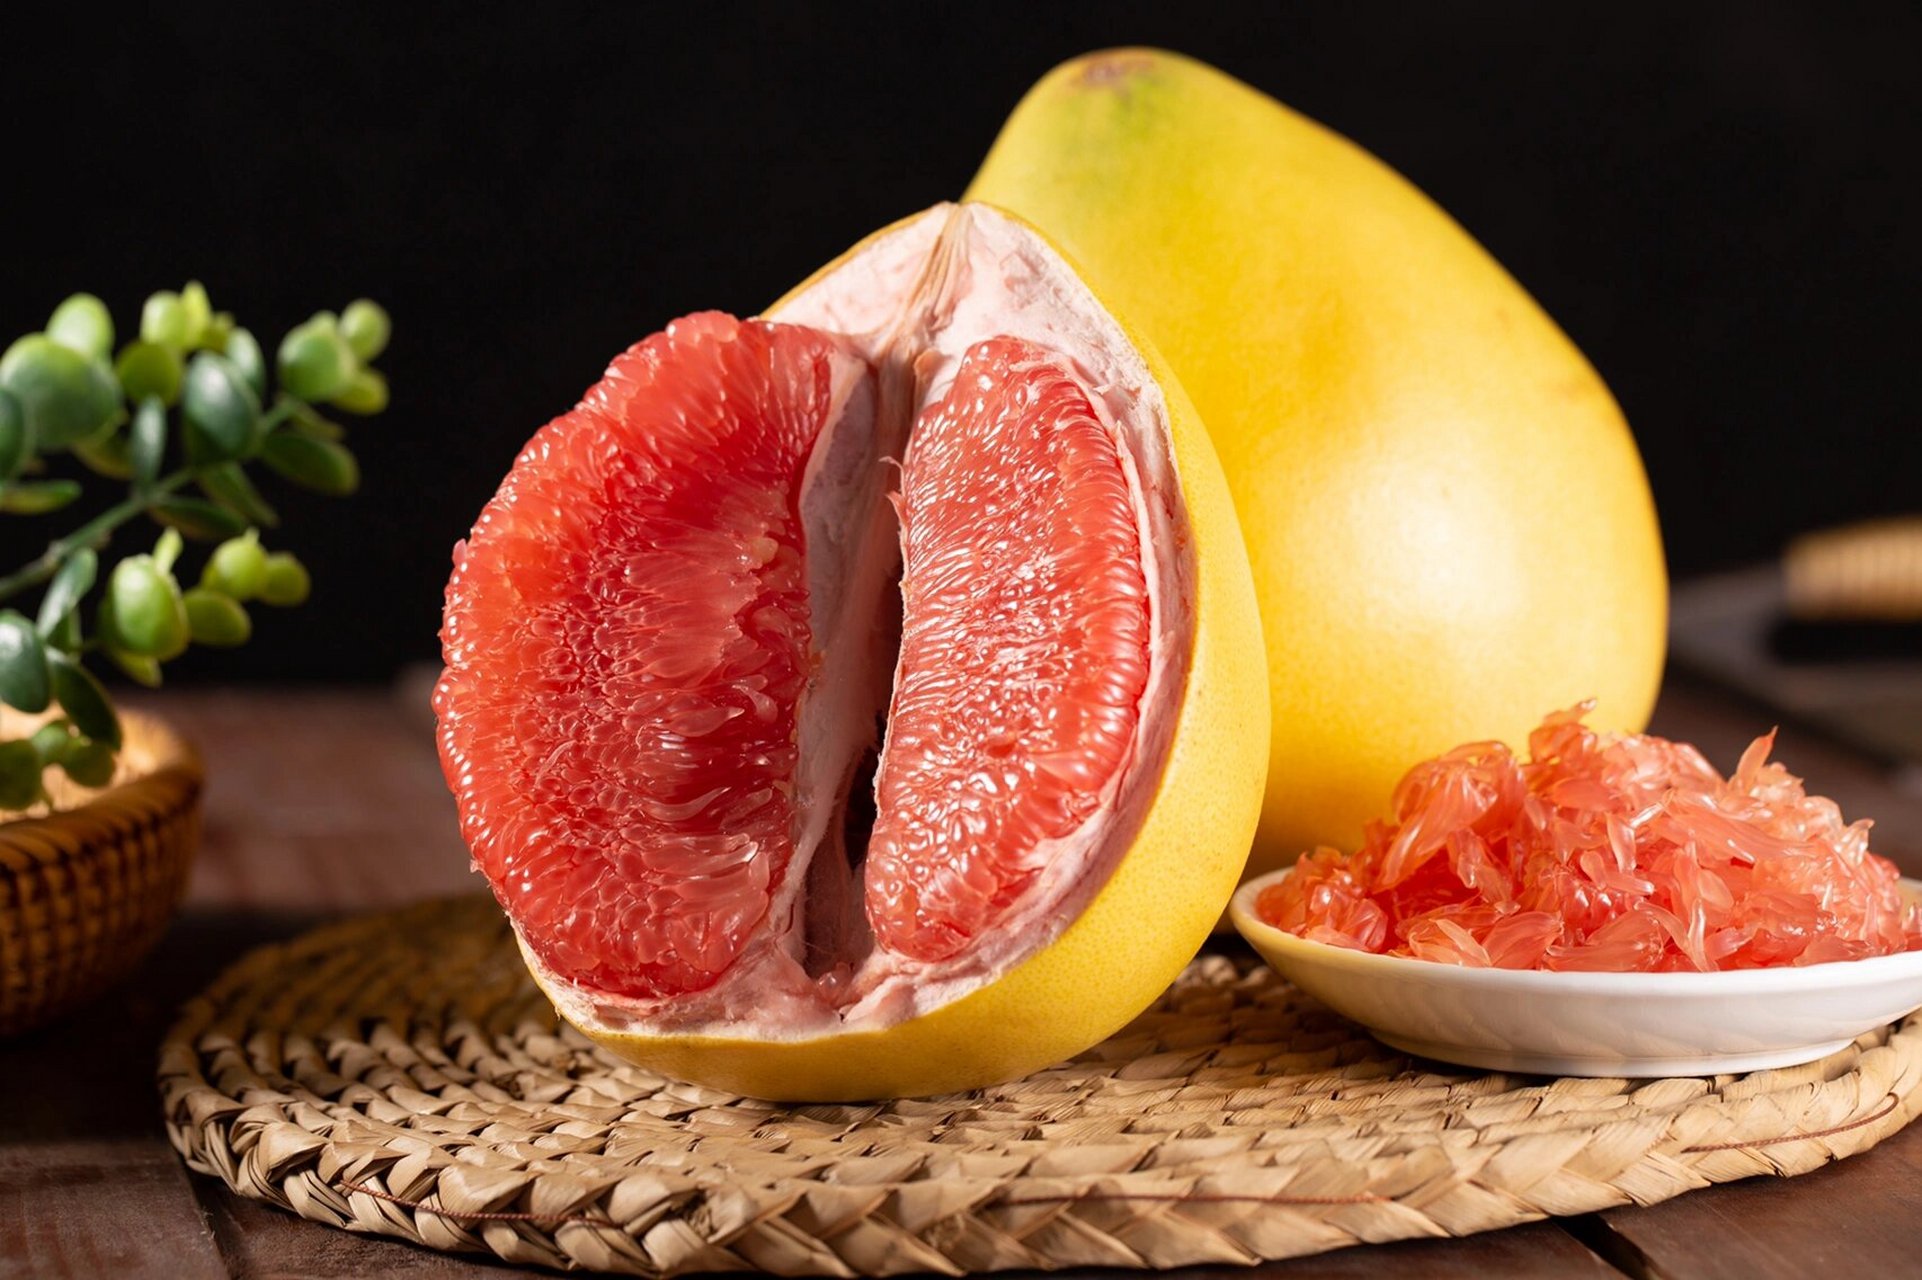 糖尿病人能吃柚子吗图片